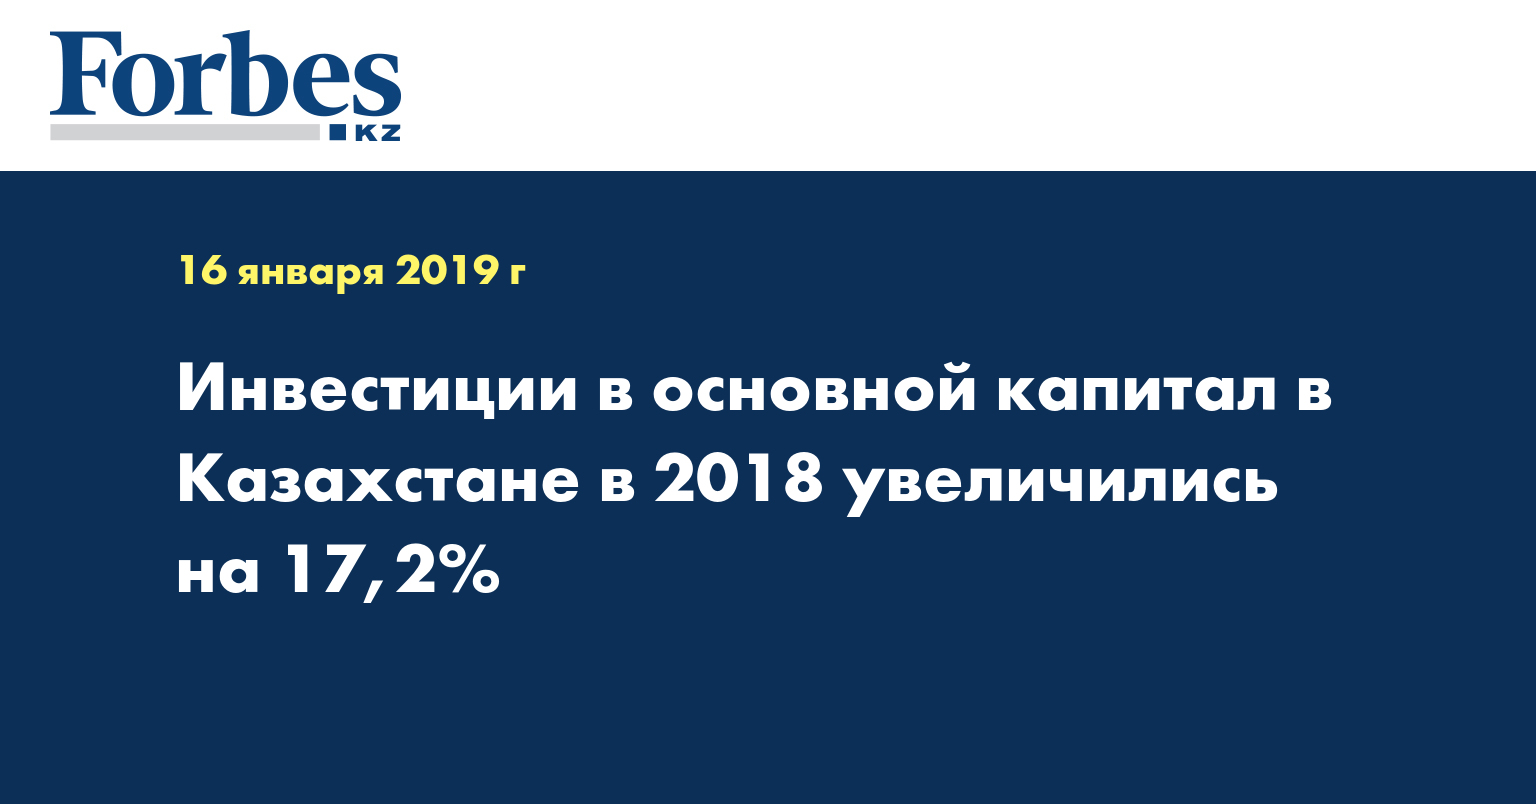 Инвестиции в основной капитал в Казахстане в 2018 увеличились на 17,2%